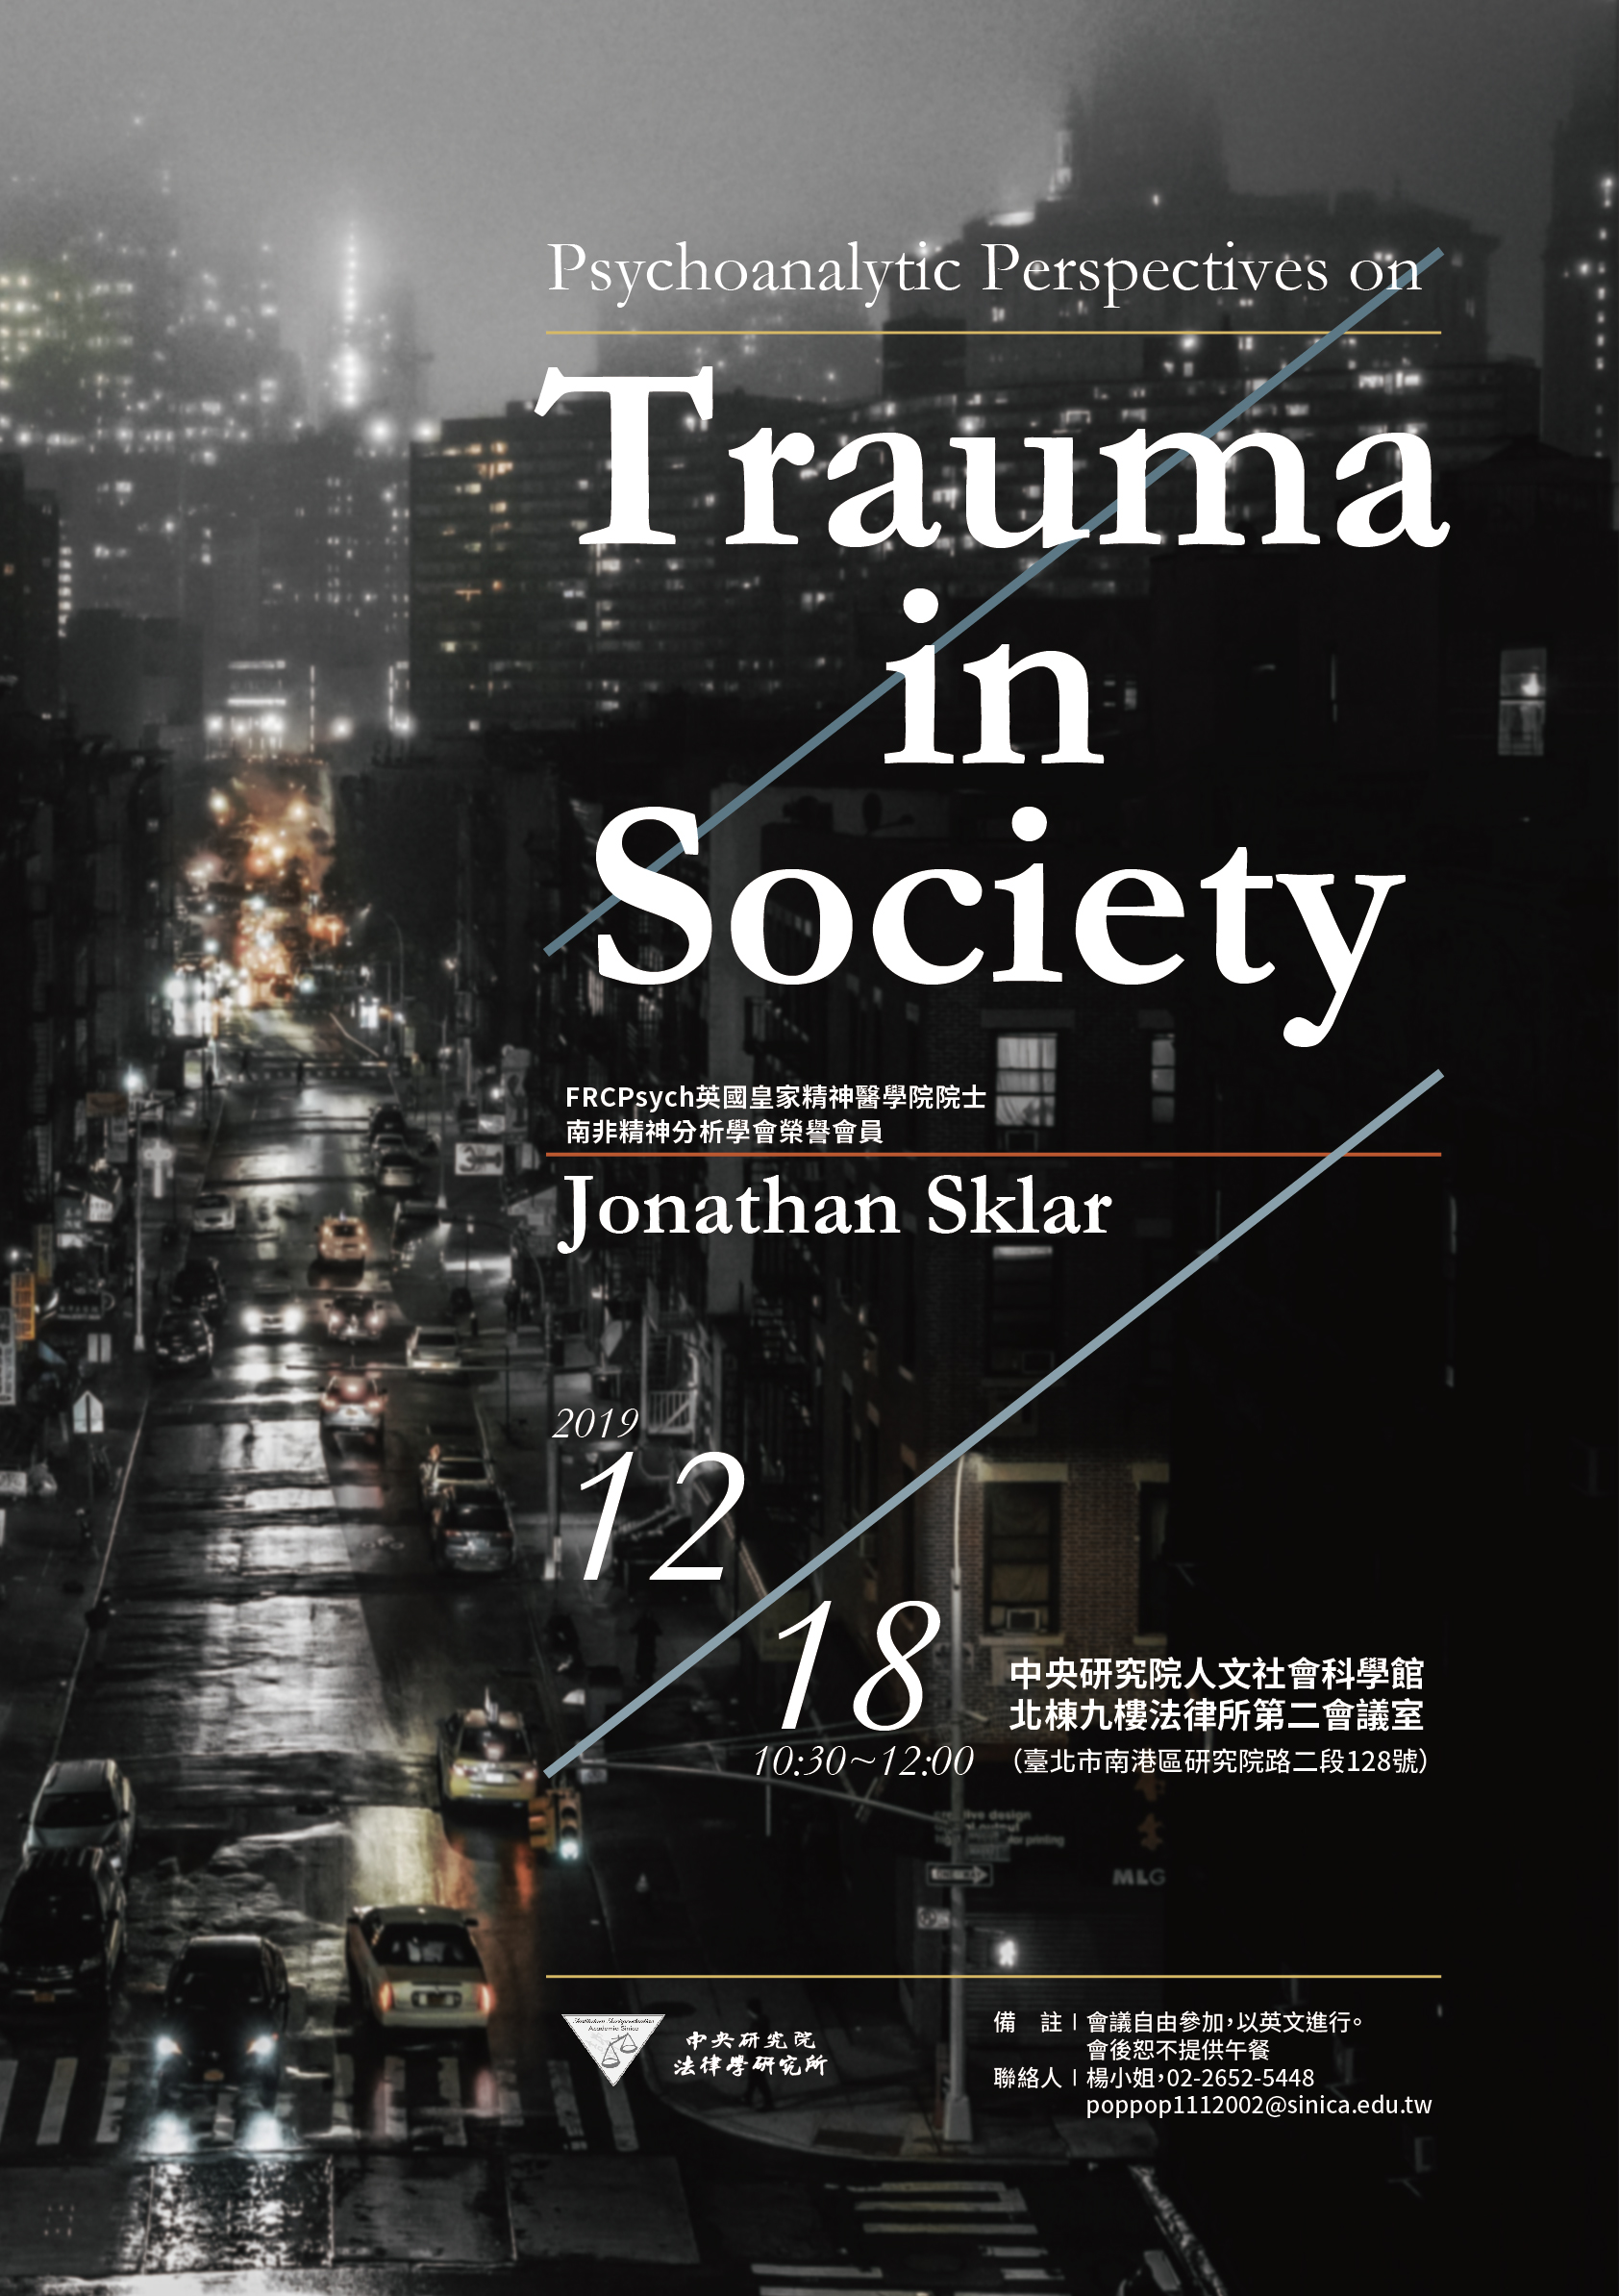 Seminar: Psychoanalytic Perspectives on Trauma in Society